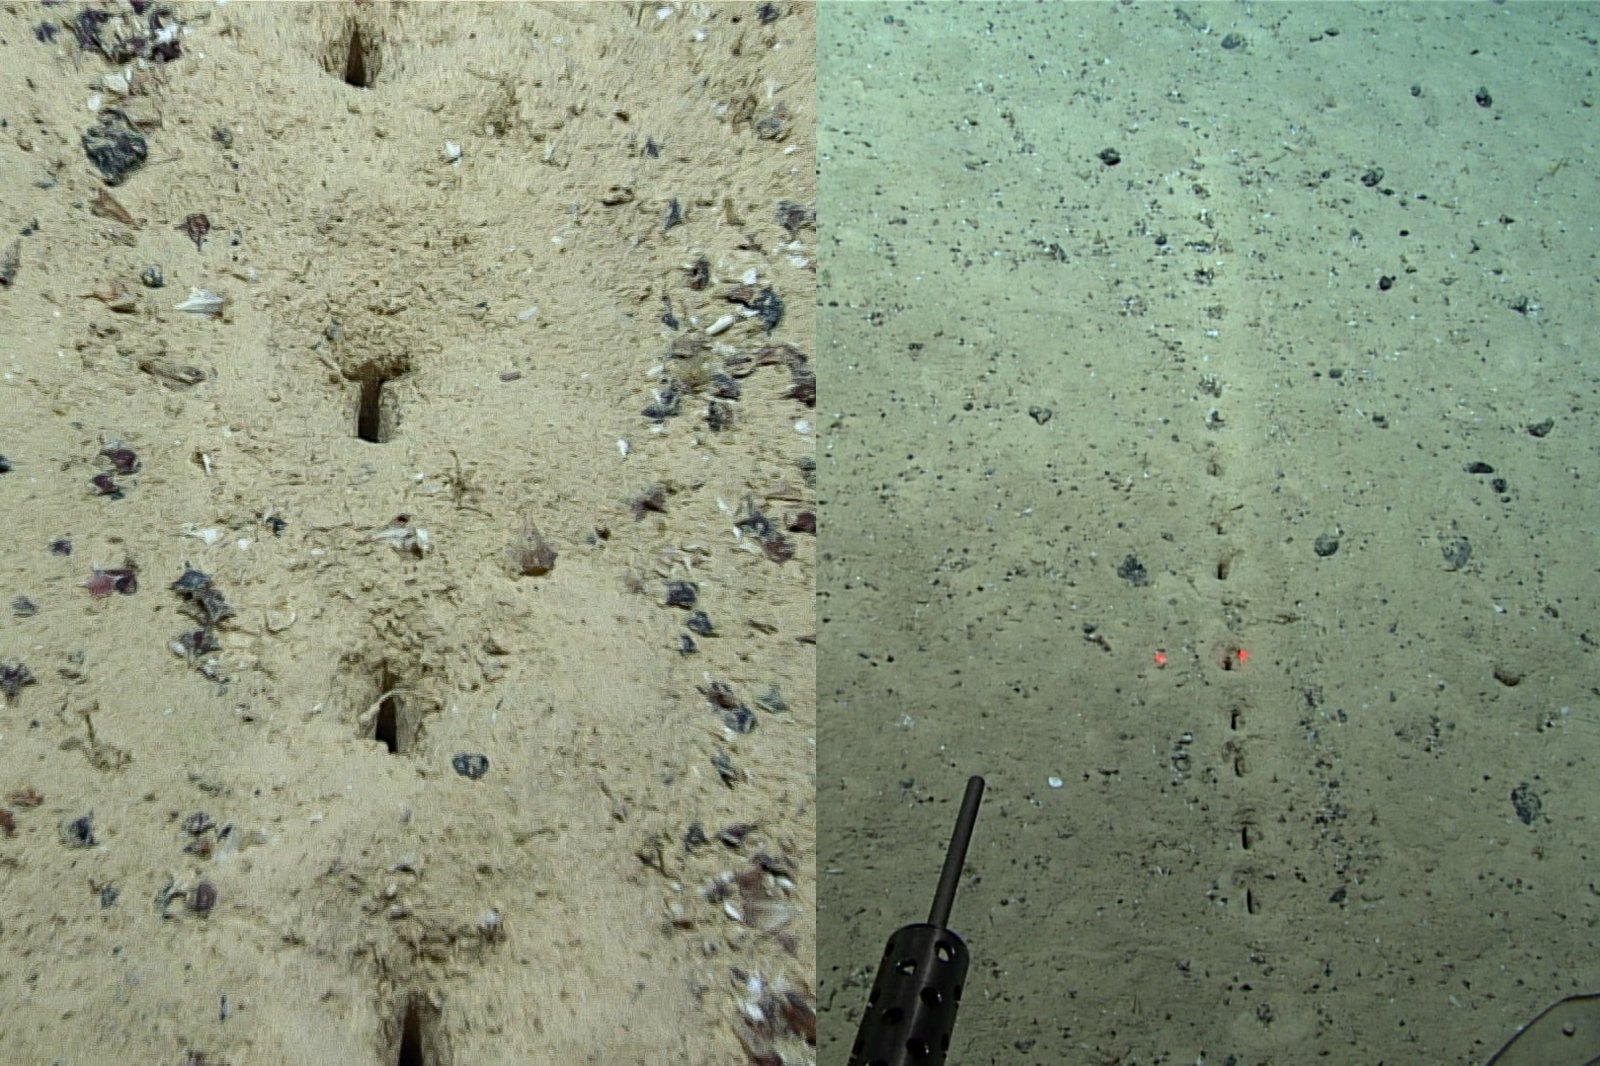 Gli scienziati scesi nelle profondità dell’oceano sono rimasti stupiti da strani fenomeni ricorrenti: chi lascia queste misteriose tracce sul fondo?